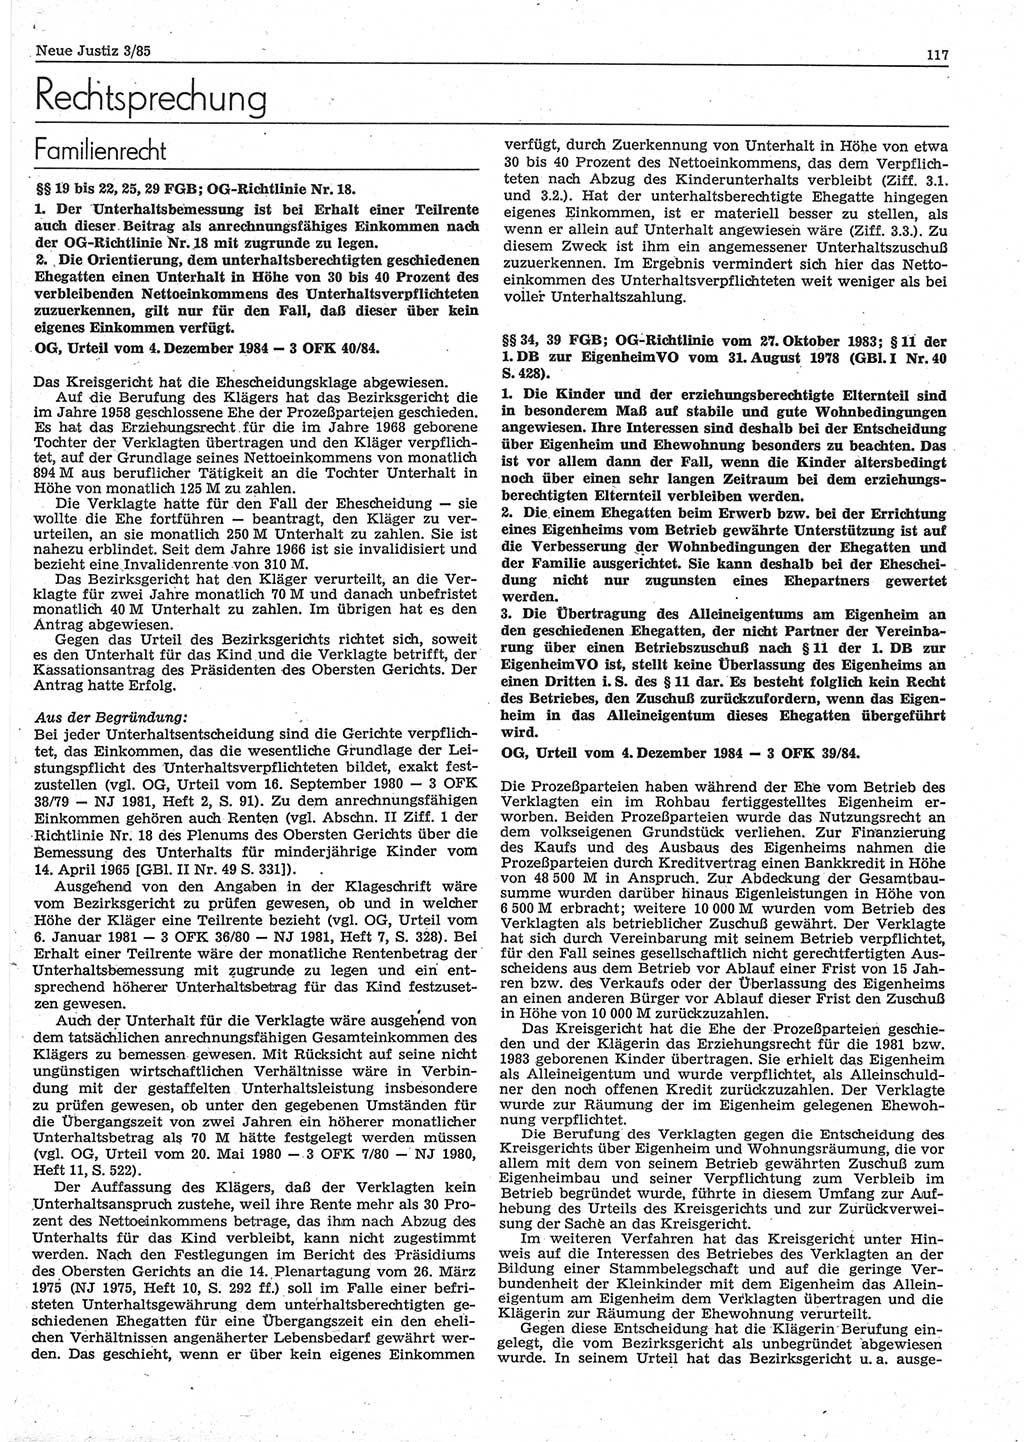 Neue Justiz (NJ), Zeitschrift für sozialistisches Recht und Gesetzlichkeit [Deutsche Demokratische Republik (DDR)], 39. Jahrgang 1985, Seite 117 (NJ DDR 1985, S. 117)